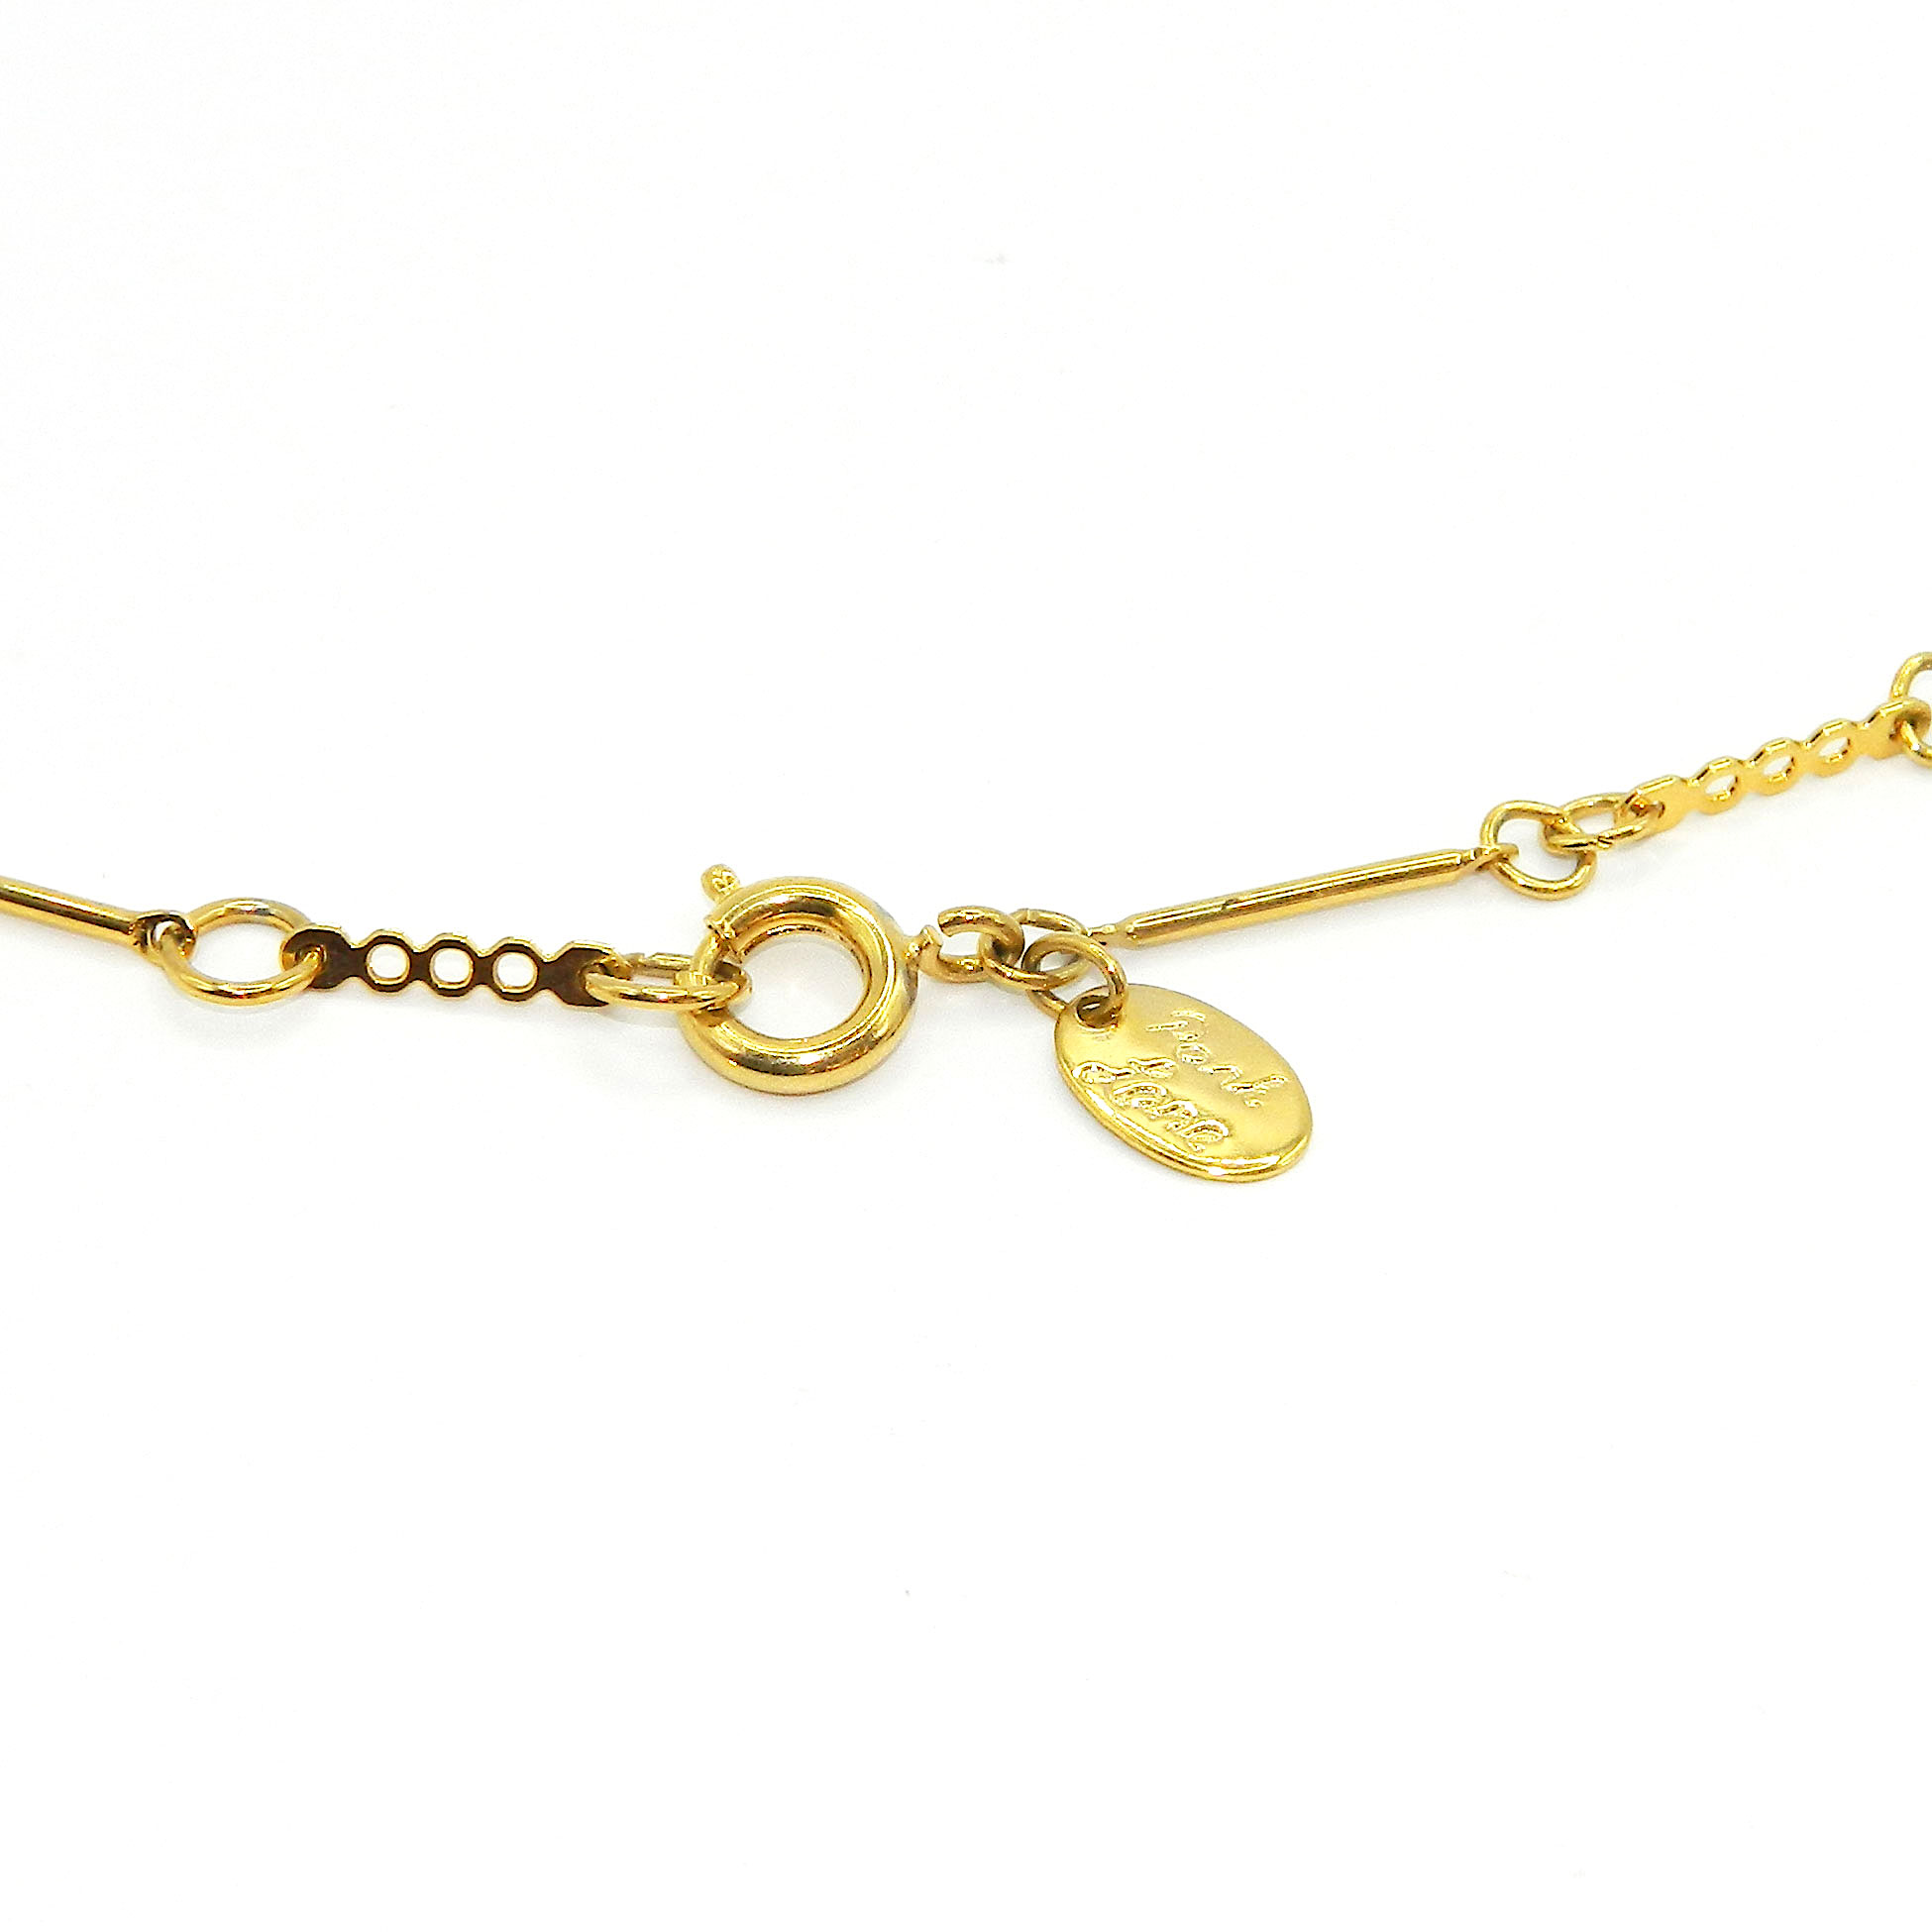 Park Lane gold star pendant necklace